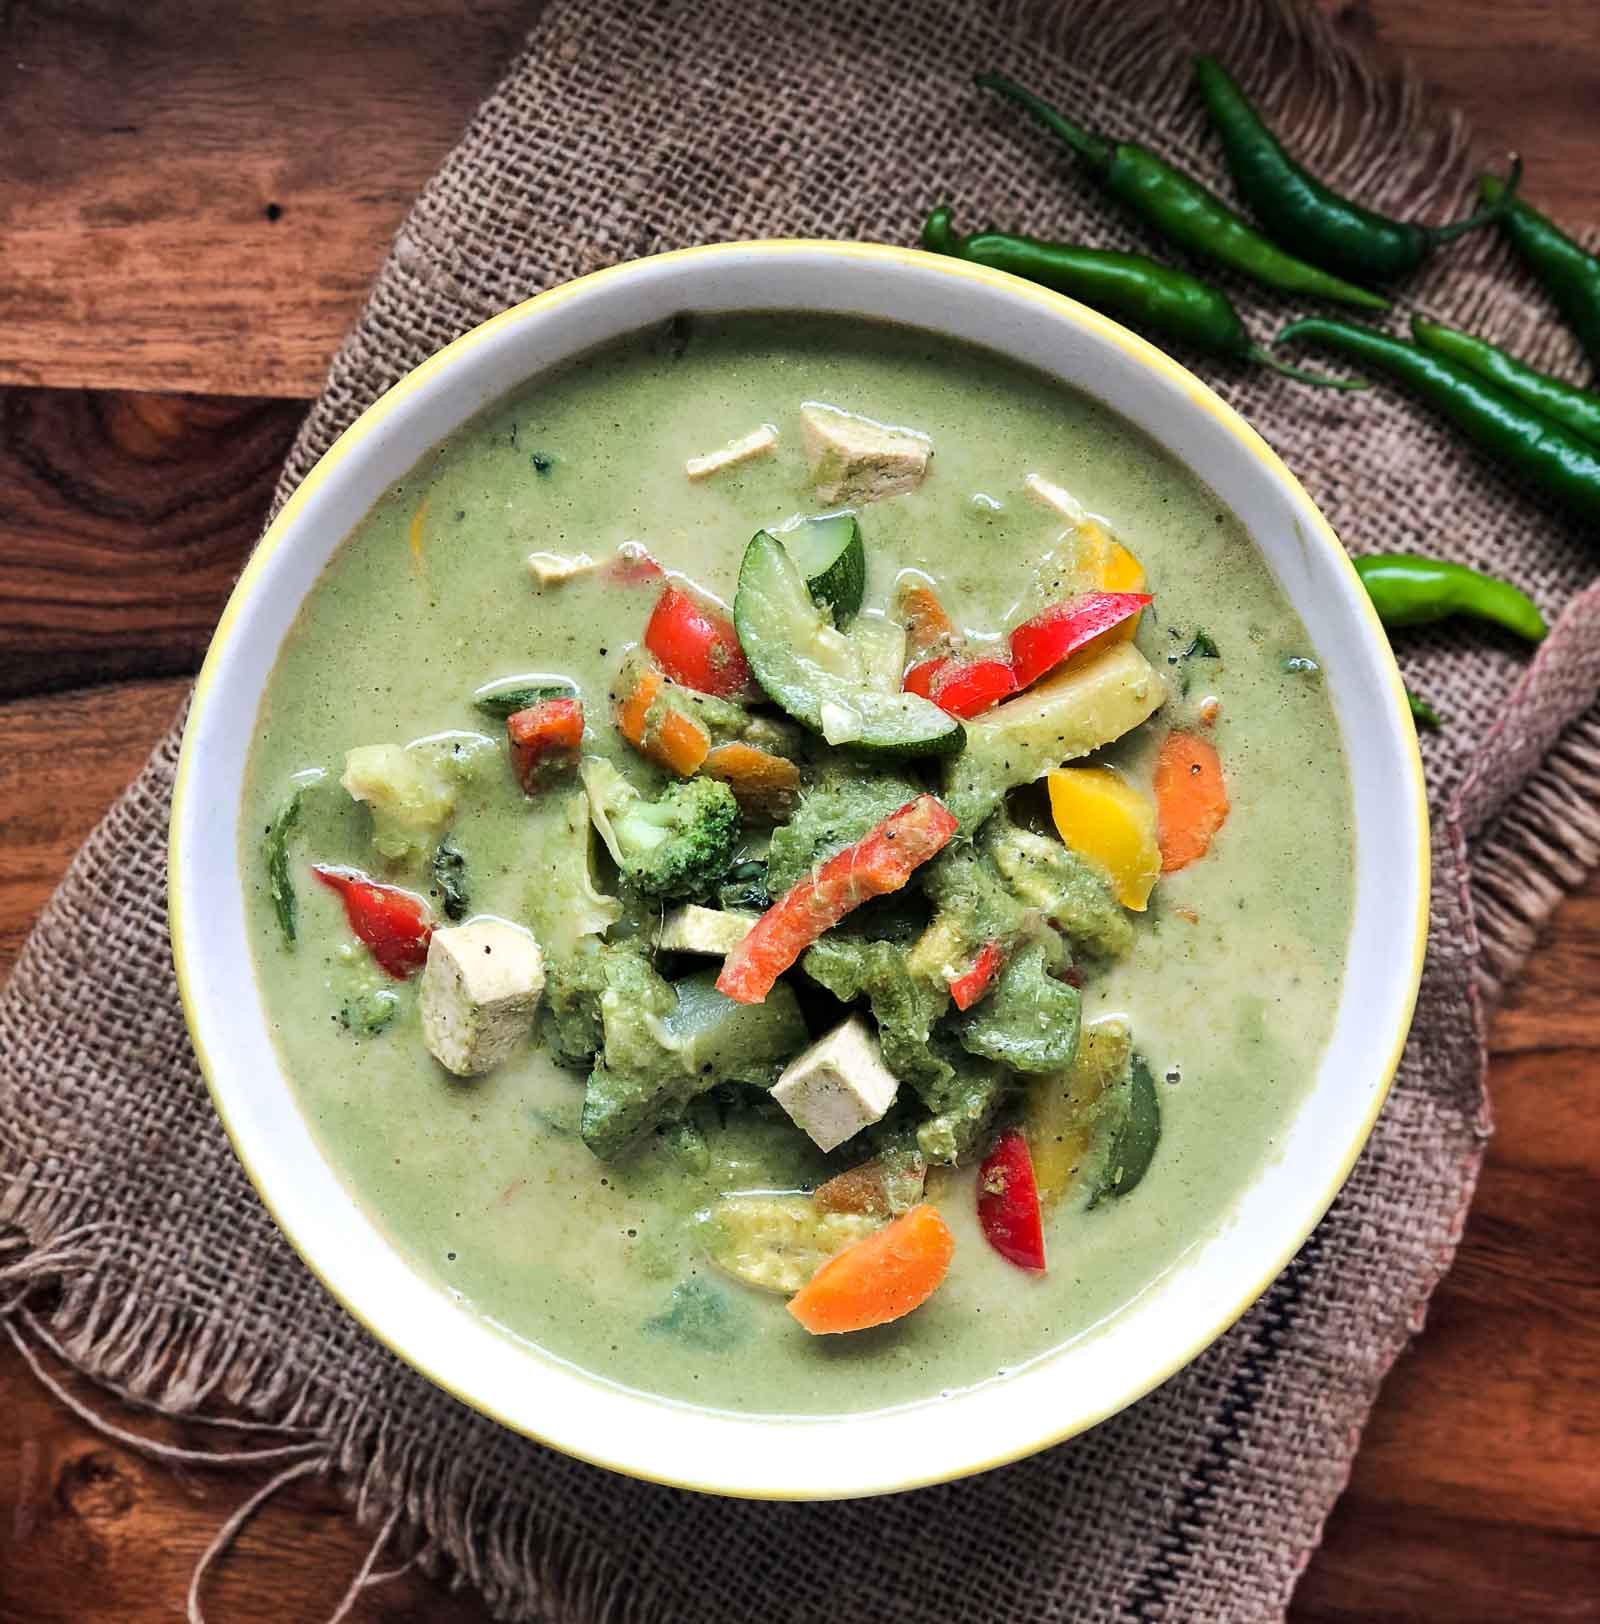 Vegetarian Thai Green Curry Recipes
 Ve arian Thai Green Curry Recipe by Archana s Kitchen